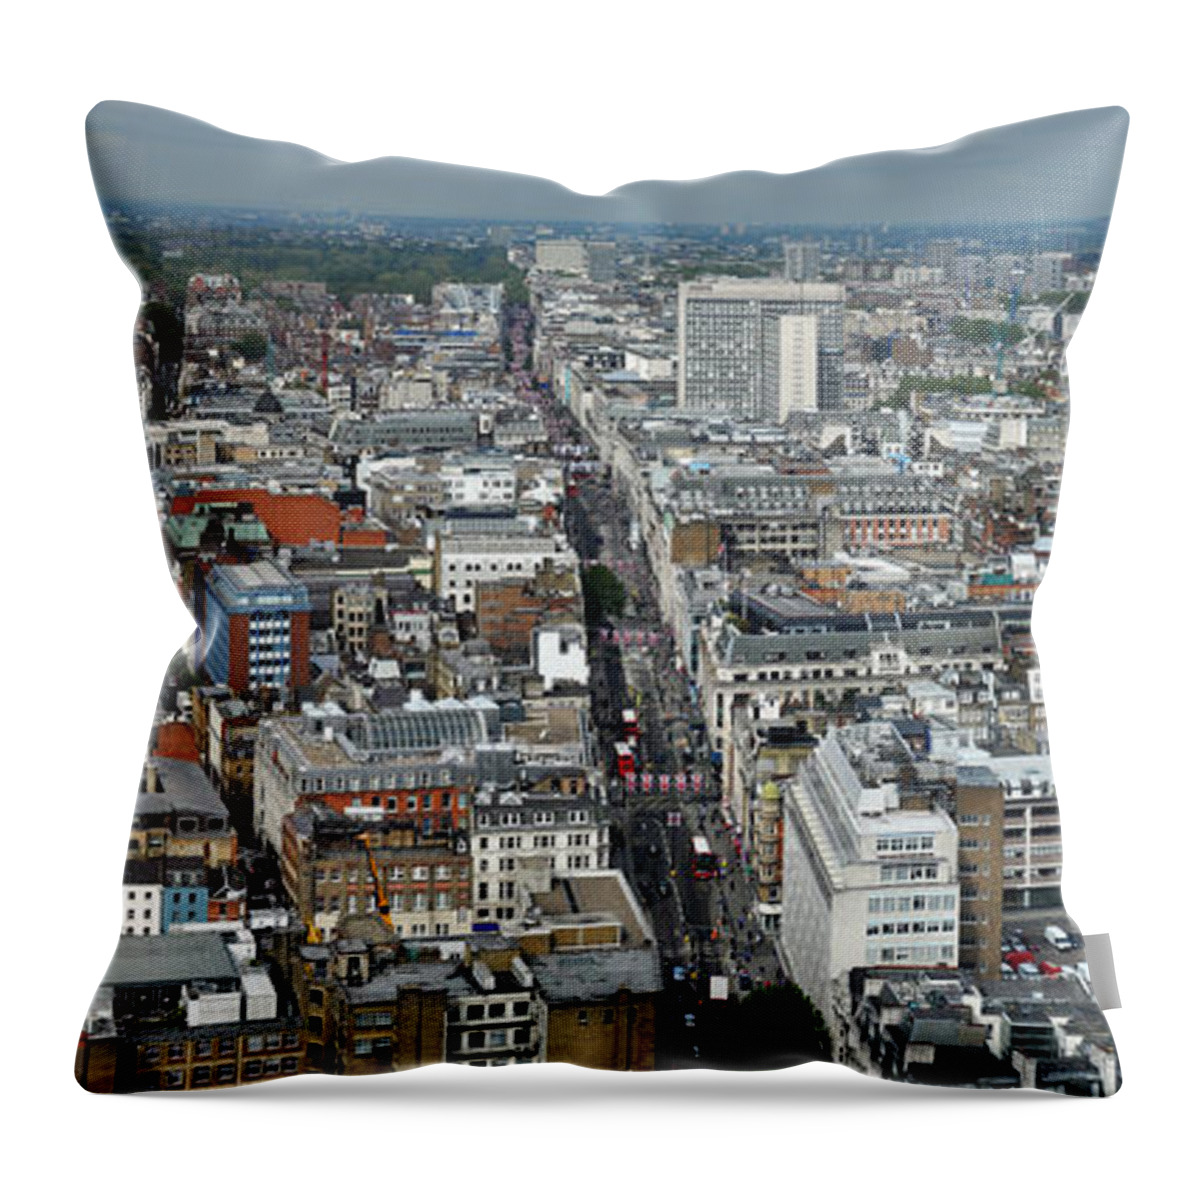 Vertical Throw Pillow featuring the photograph Oxford Street Vertical by Matt Malloy